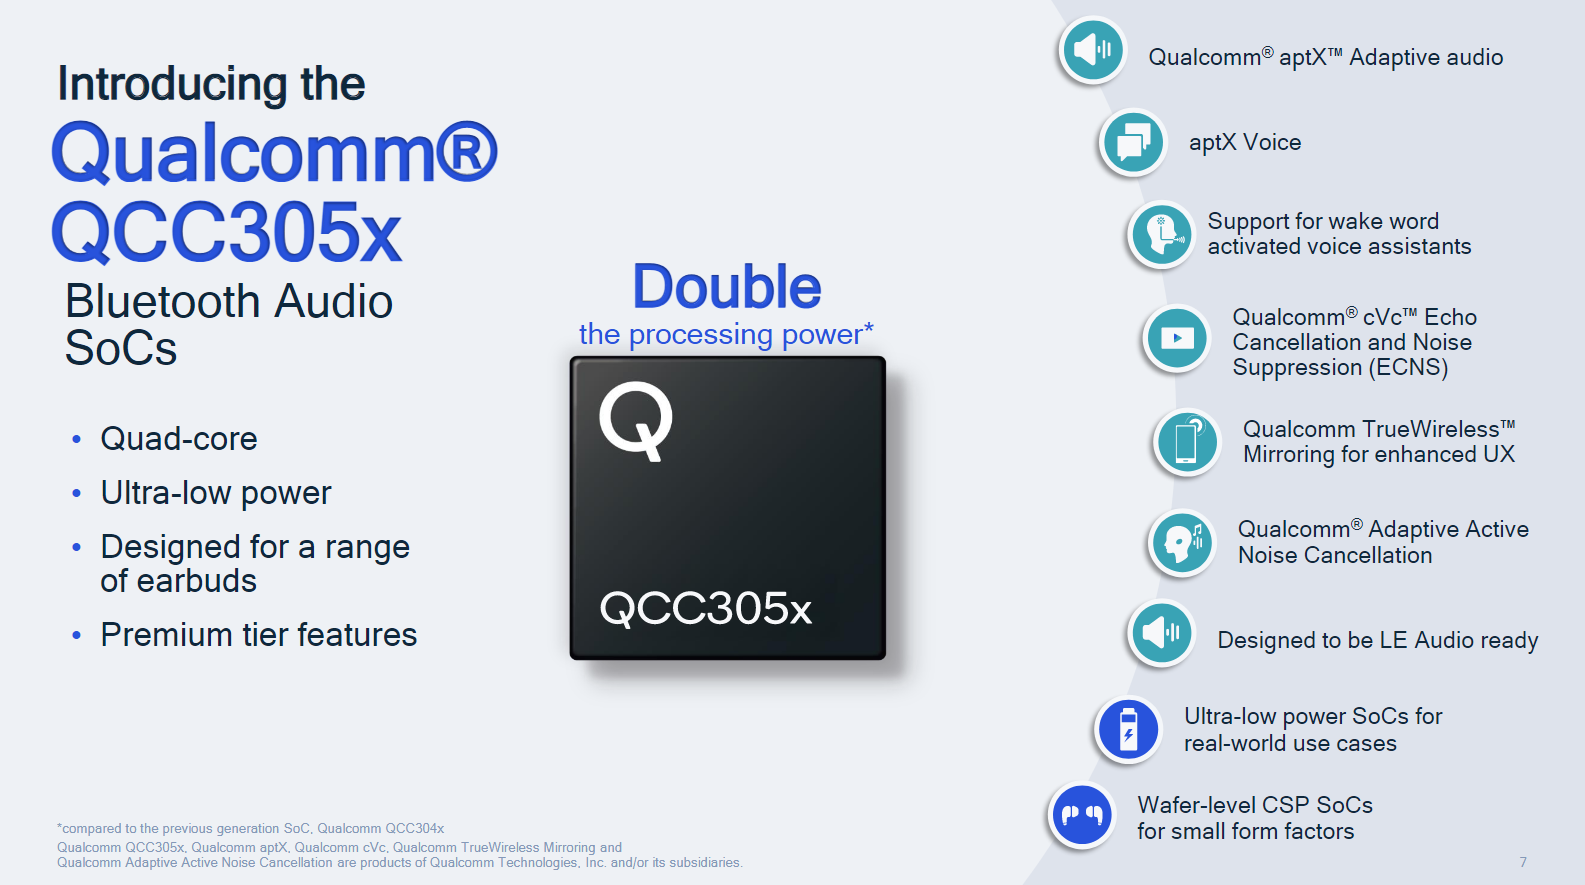 Το νέο chipset της Qualcomm για ασύρματα ακουστικά υπόσχεται πολλαπλές βελτιώσεις